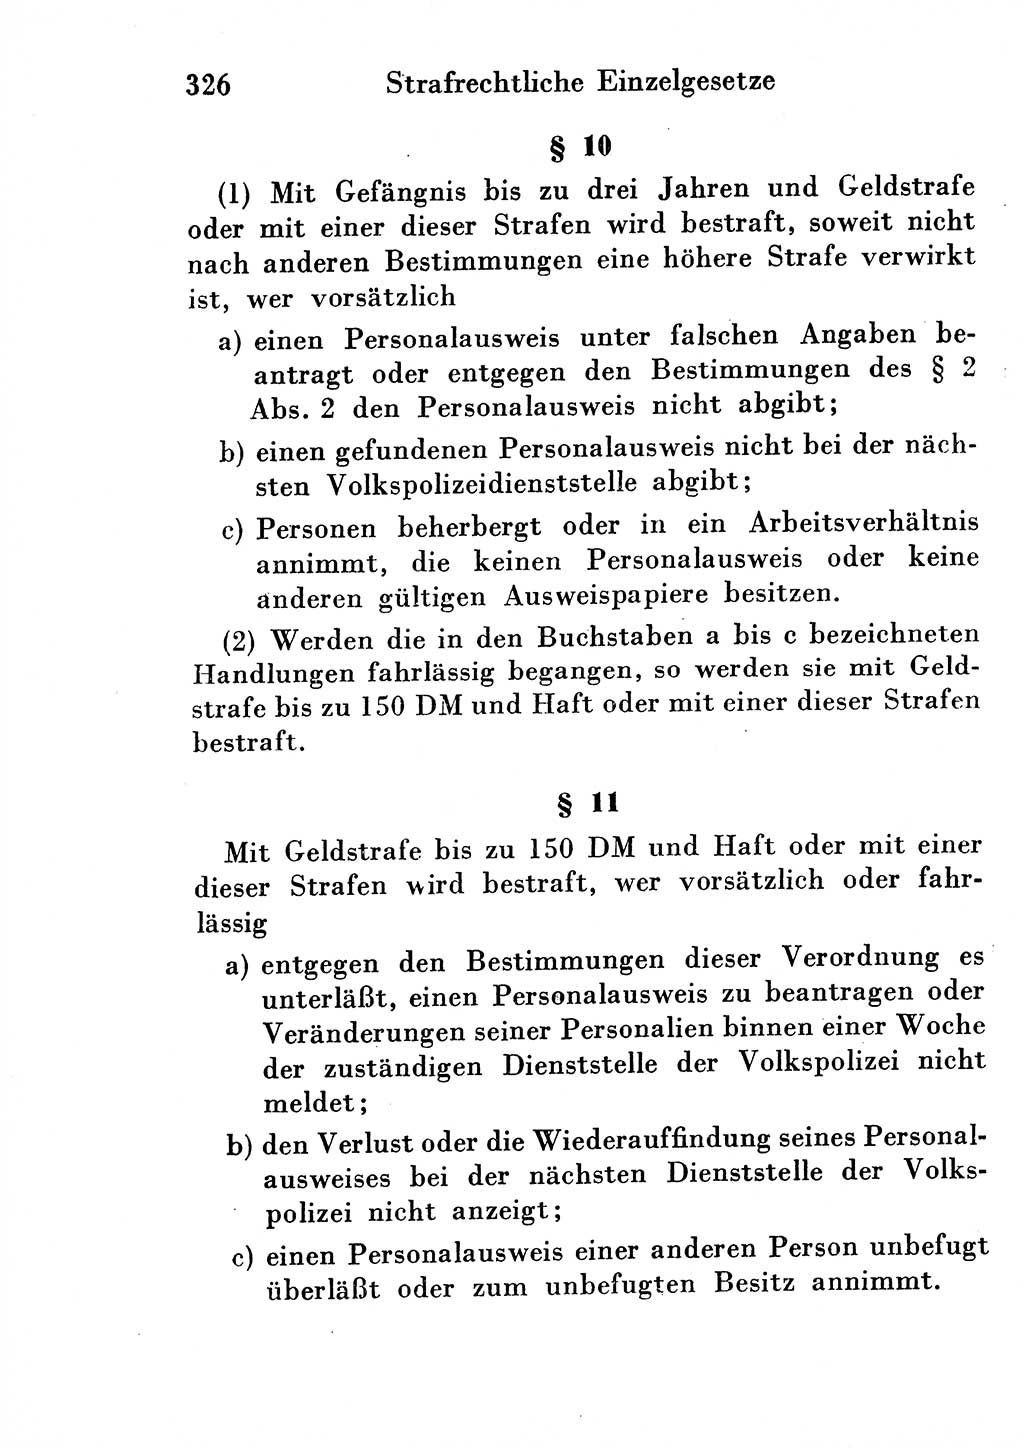 Strafgesetzbuch (StGB) und andere Strafgesetze [Deutsche Demokratische Republik (DDR)] 1954, Seite 326 (StGB Strafges. DDR 1954, S. 326)